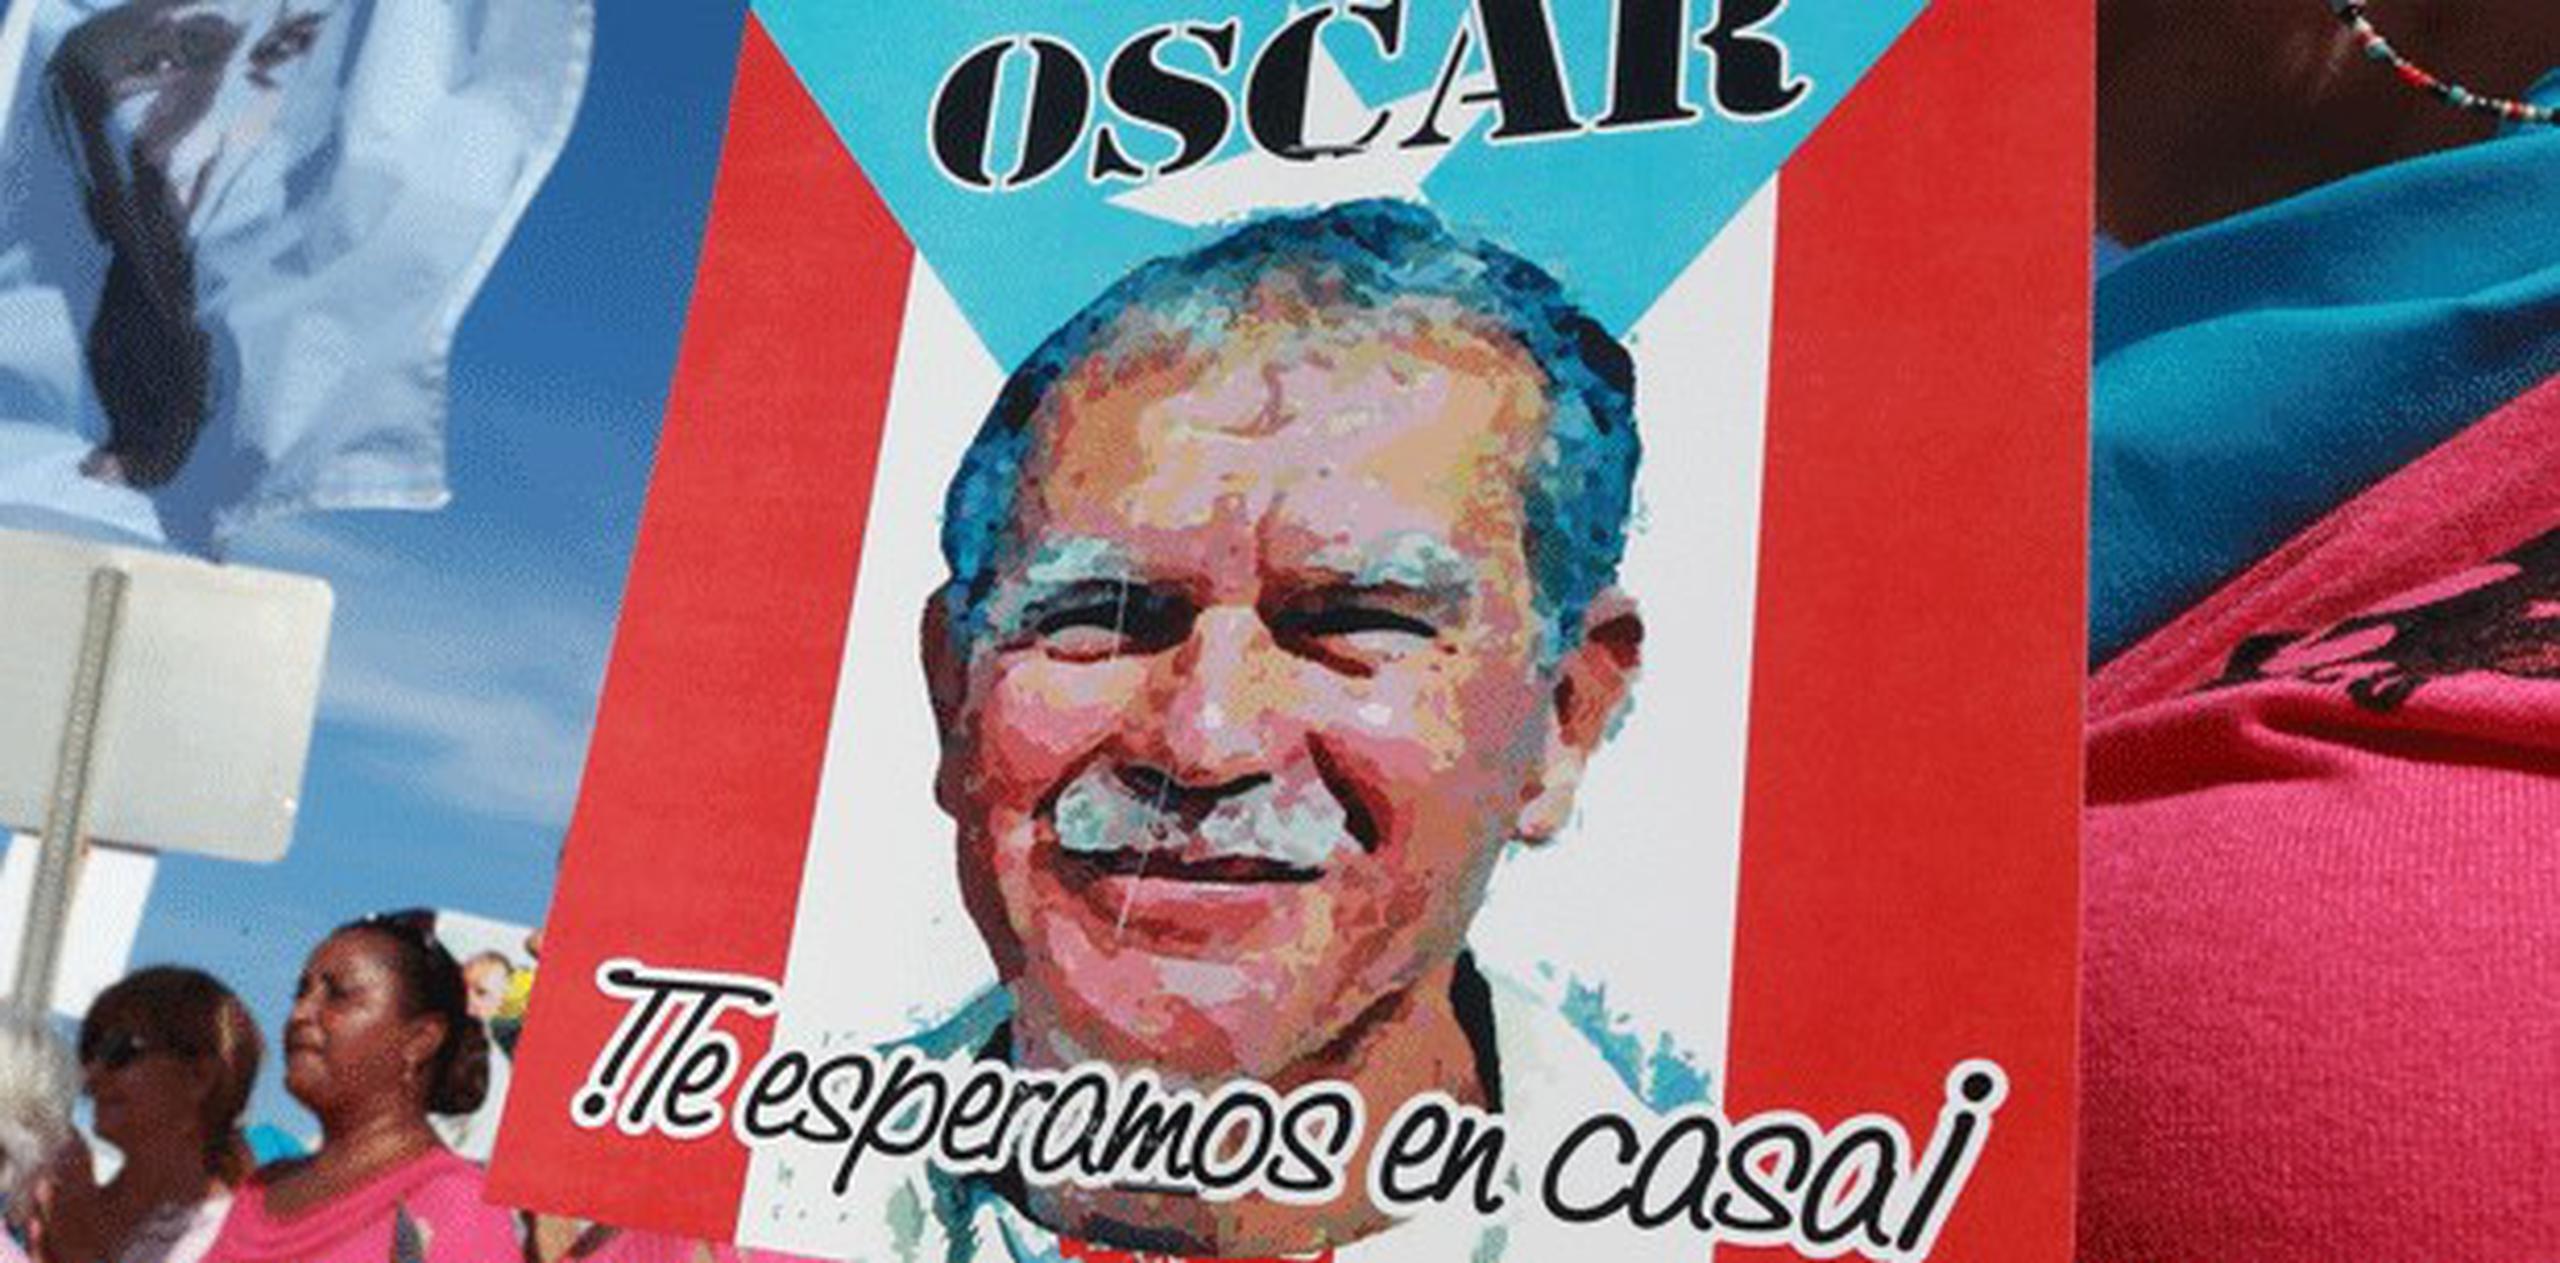 El caso de Oscar López, quien lleva 33 años preso en Estados Unidos, ha trascendido internacionalmente. (Archivo)